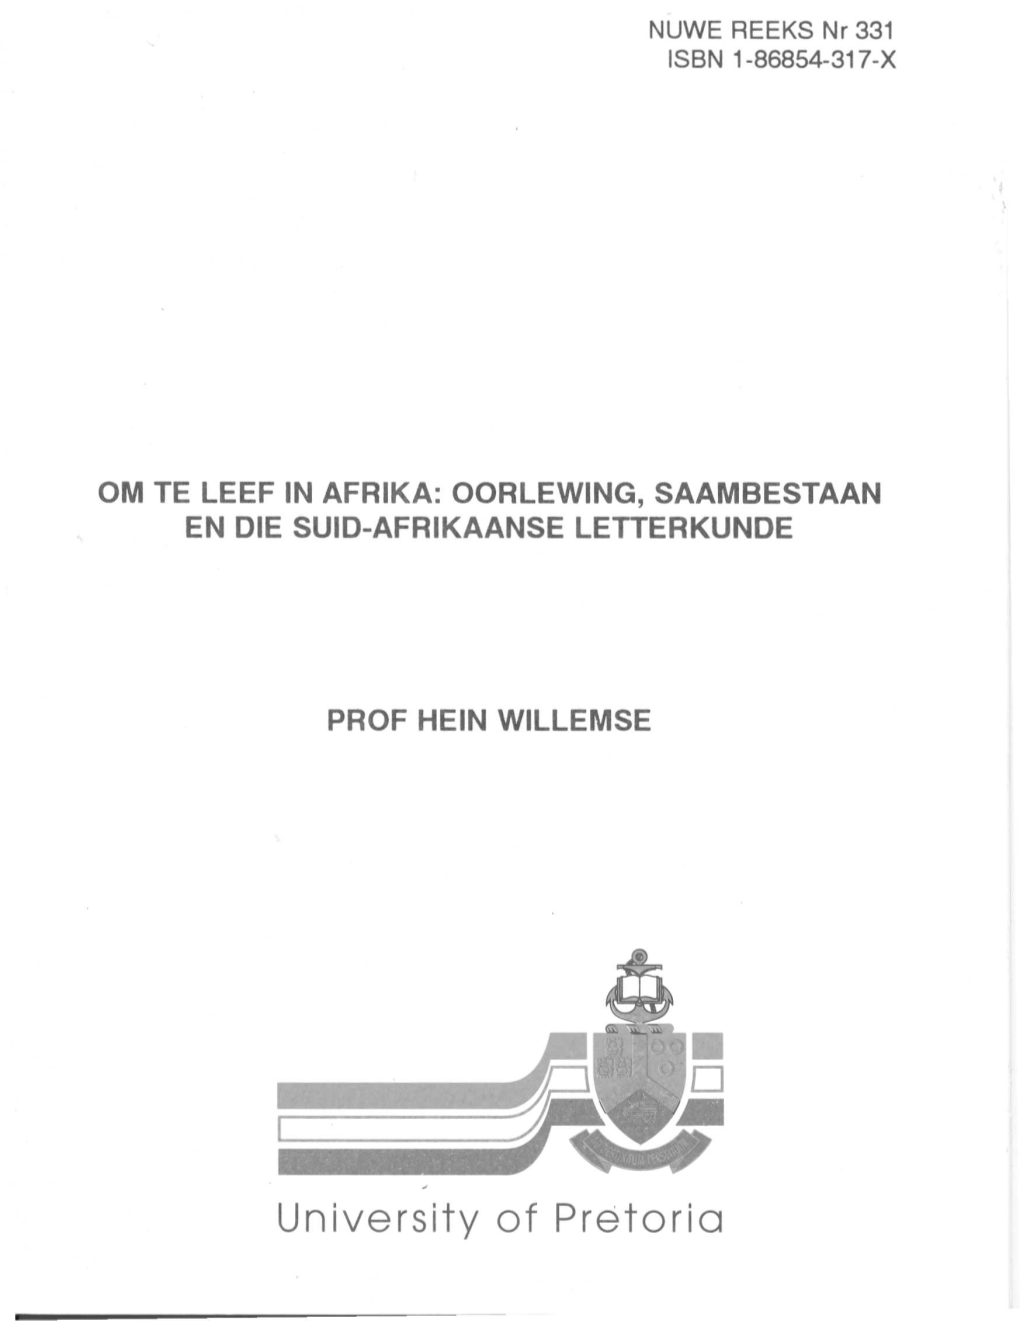 University of Pretoria OM TE LEEF in AFRIKA: OORLEWING, SAAMBESTAAN EN DIE SUID-AFRIKAANSE LETTER KUNDE